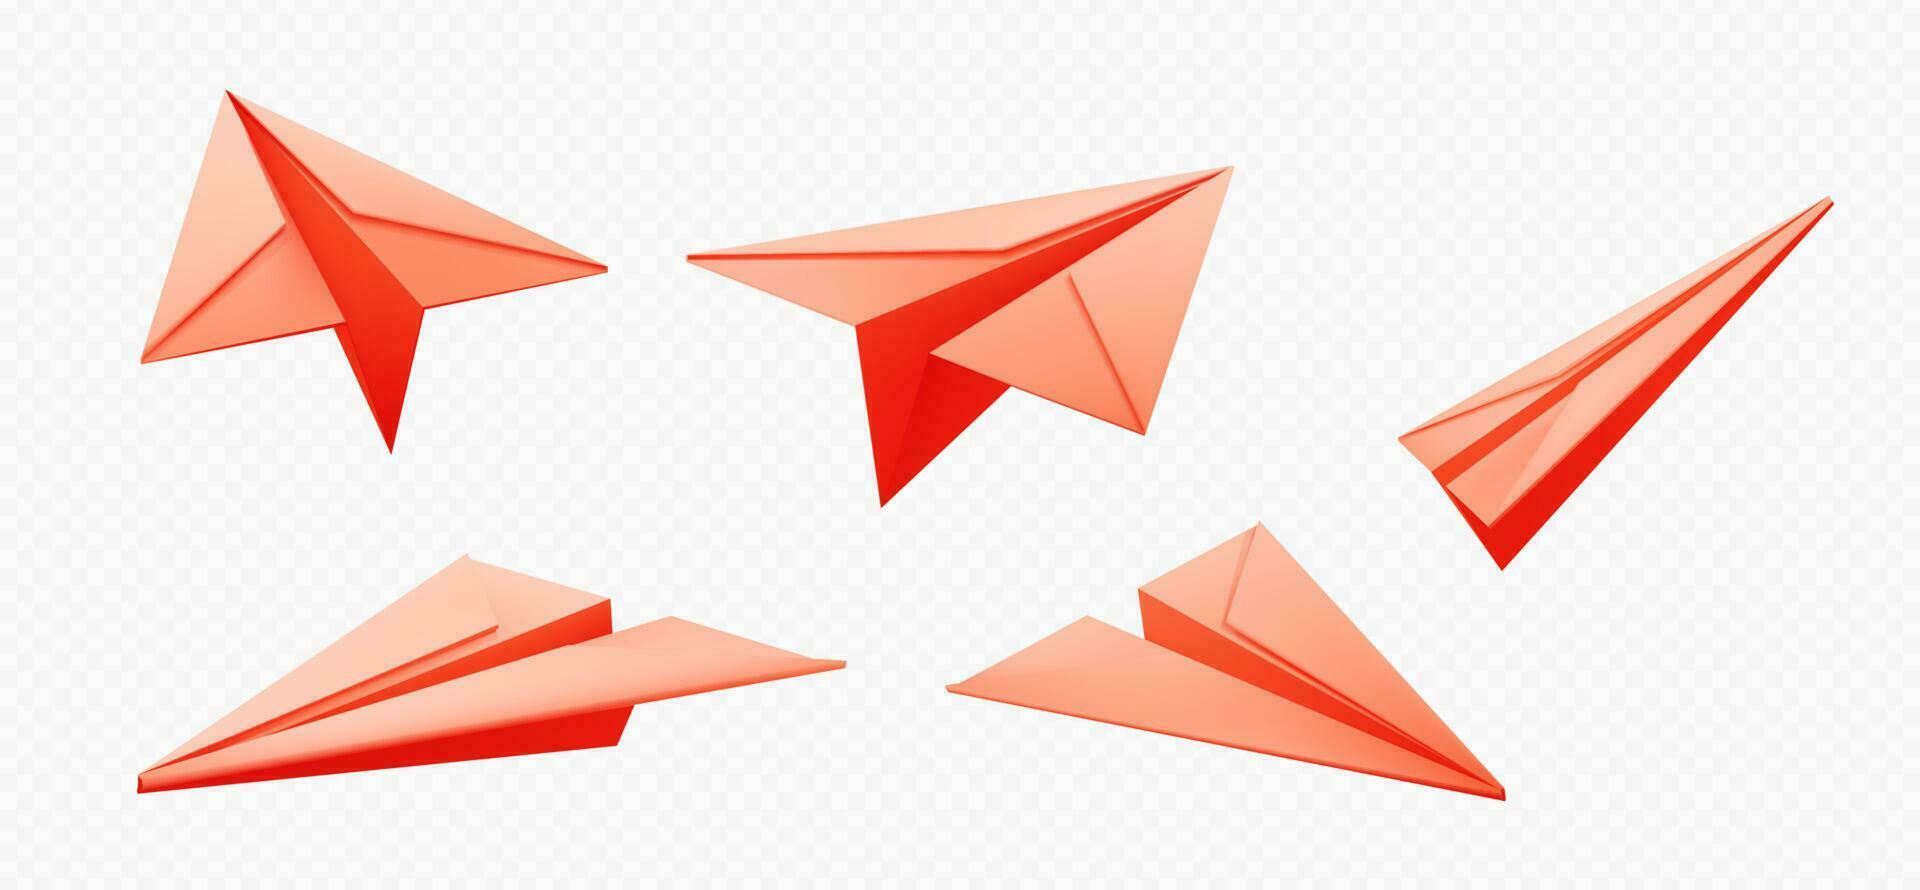 íconos de papel avión volador en aire. 3d origami vector